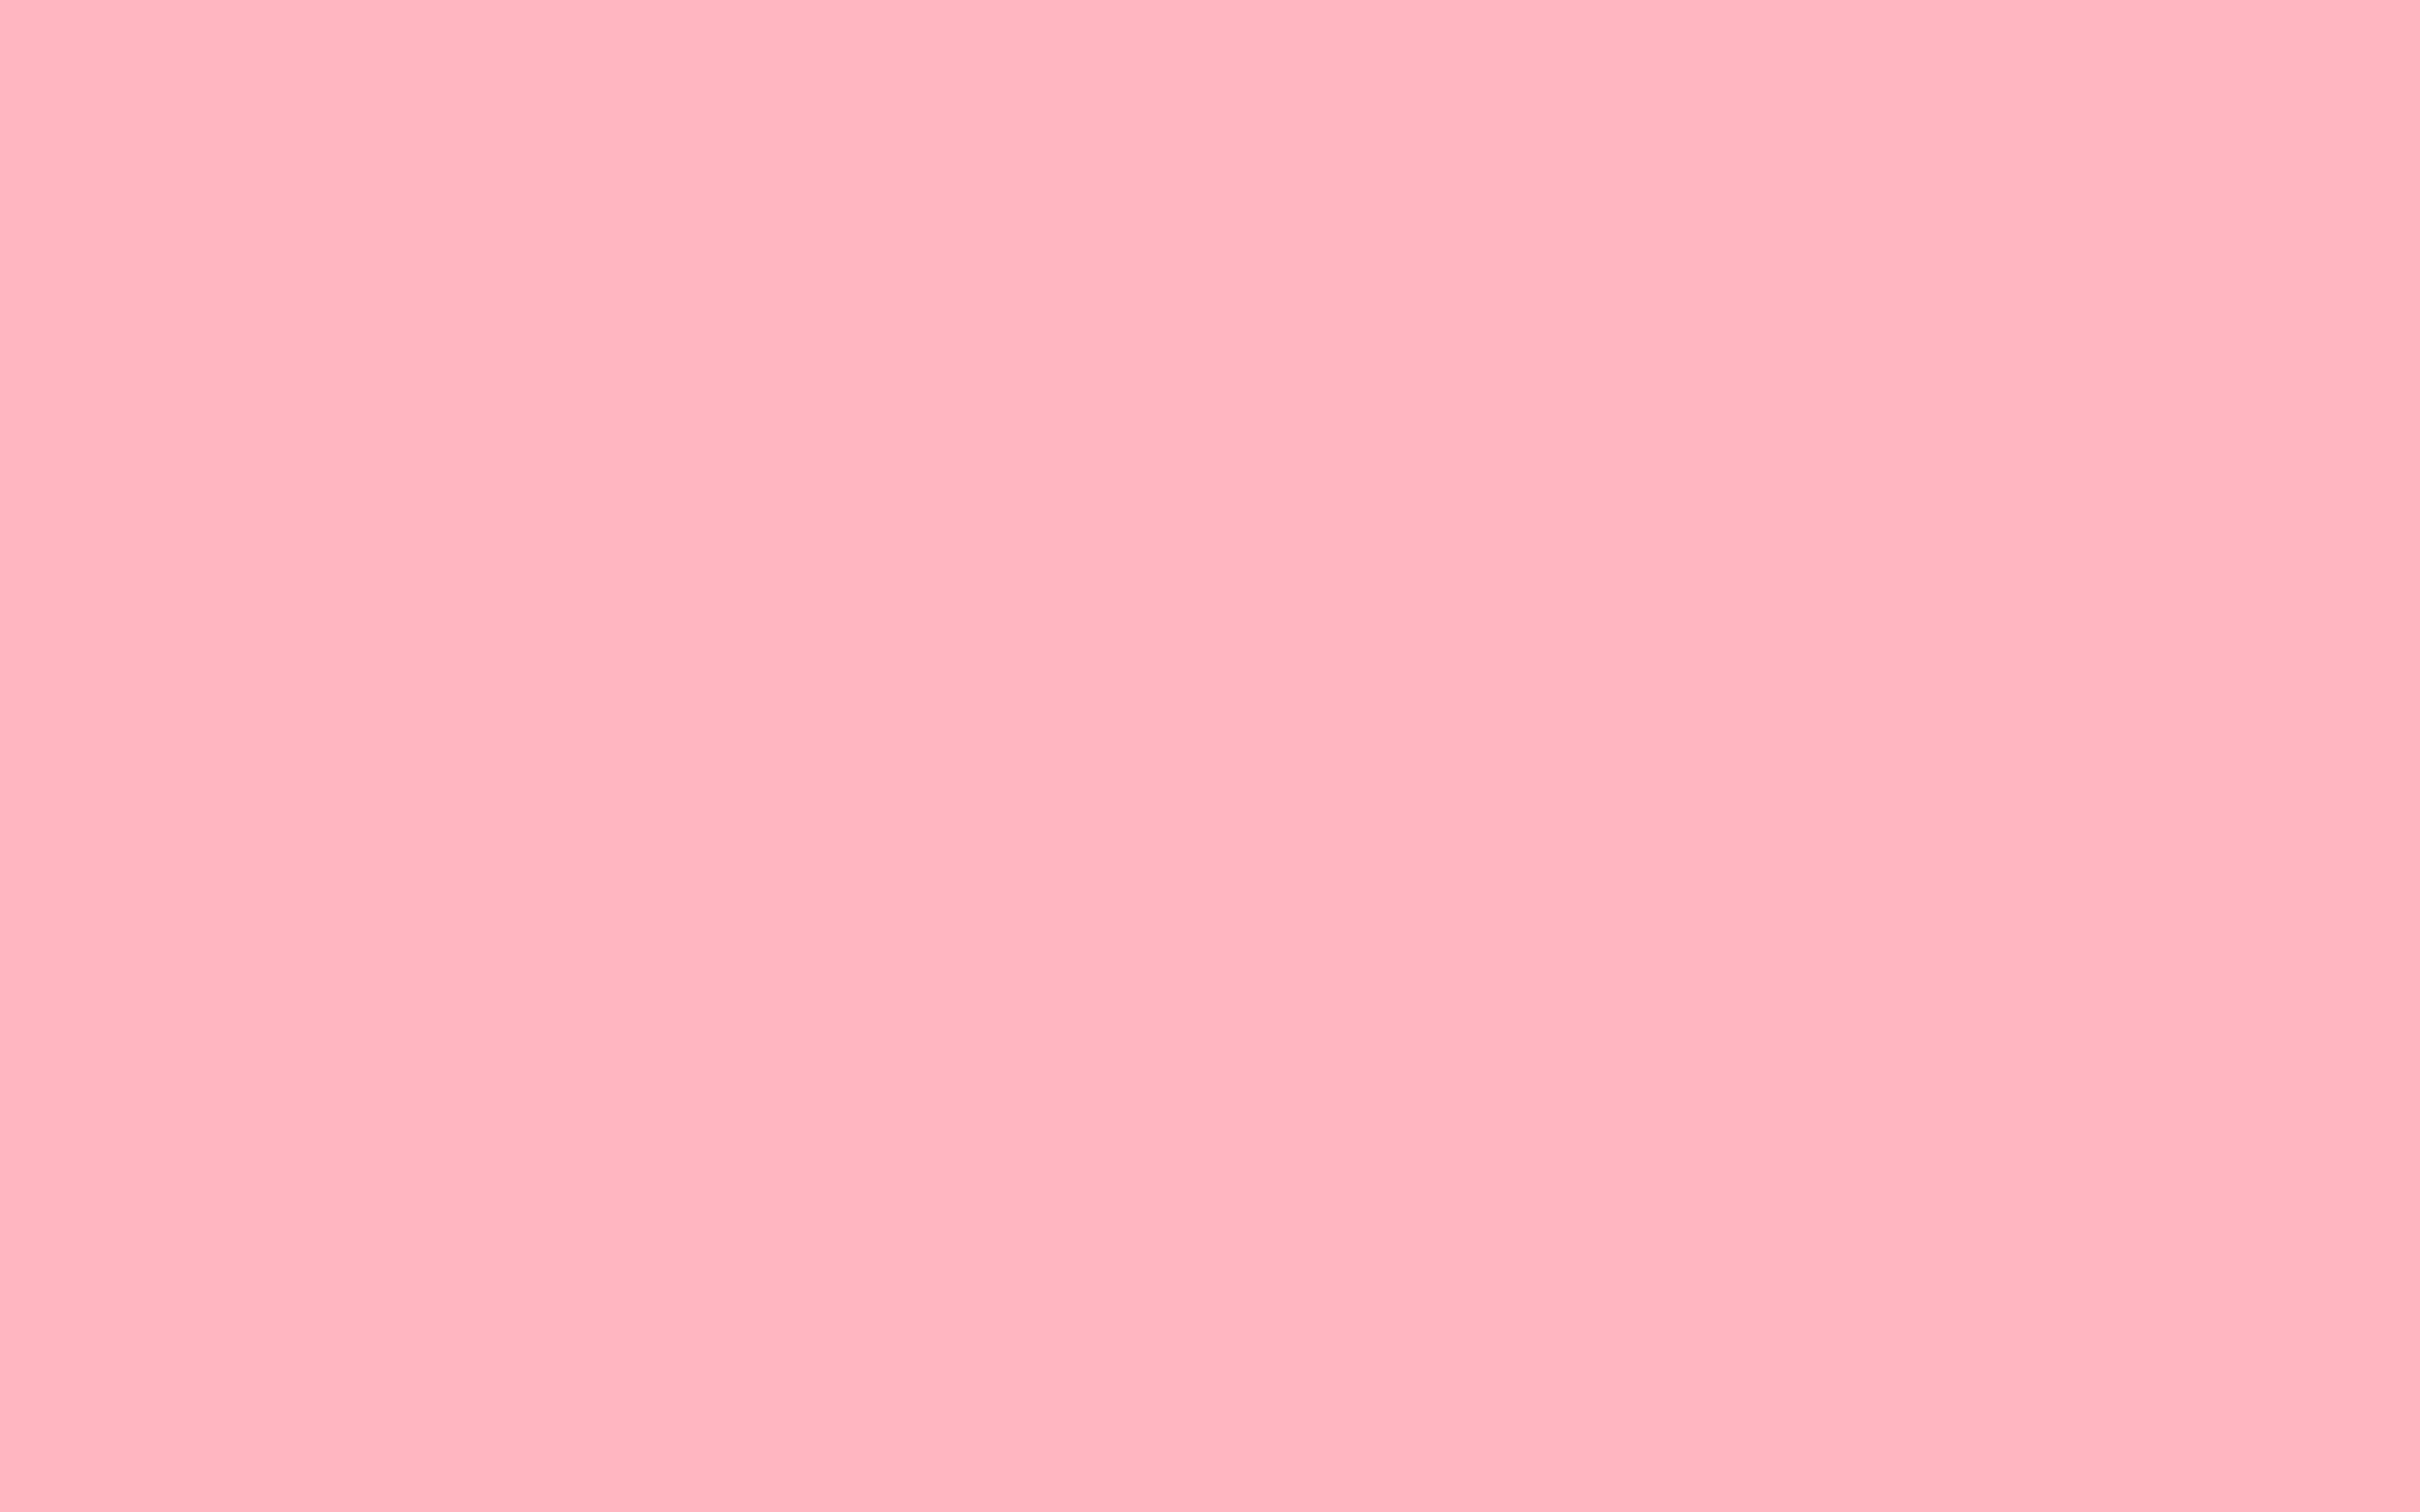 Light Pink Solid Color Background